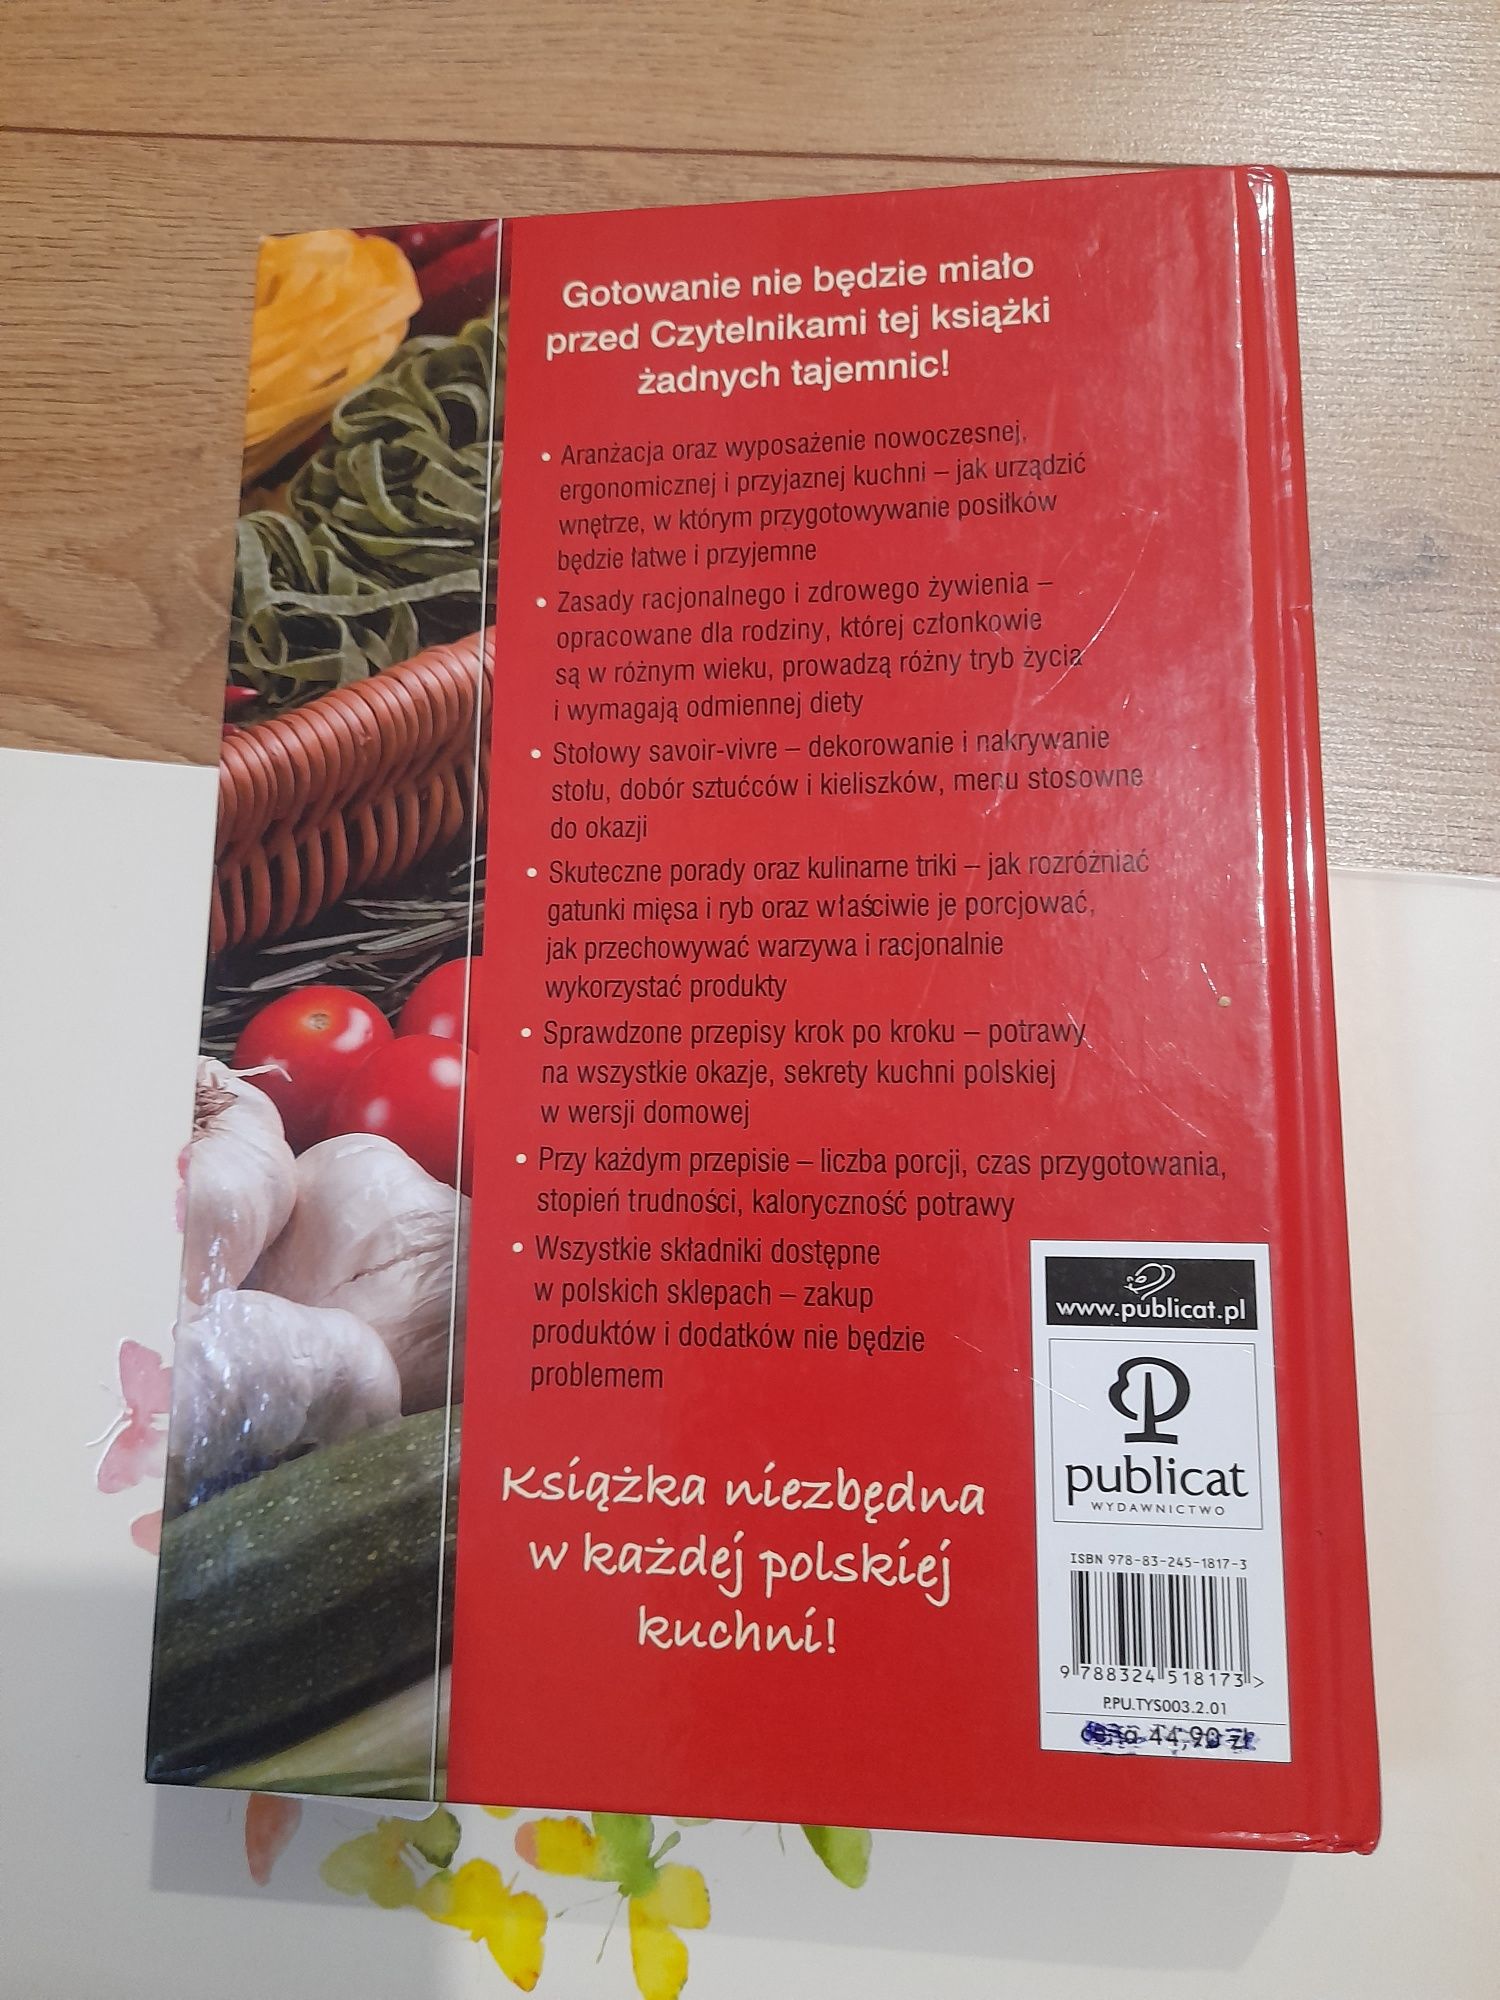 Encyklopedia kuchni kulinarnej. Kuchnia polska. Książka.